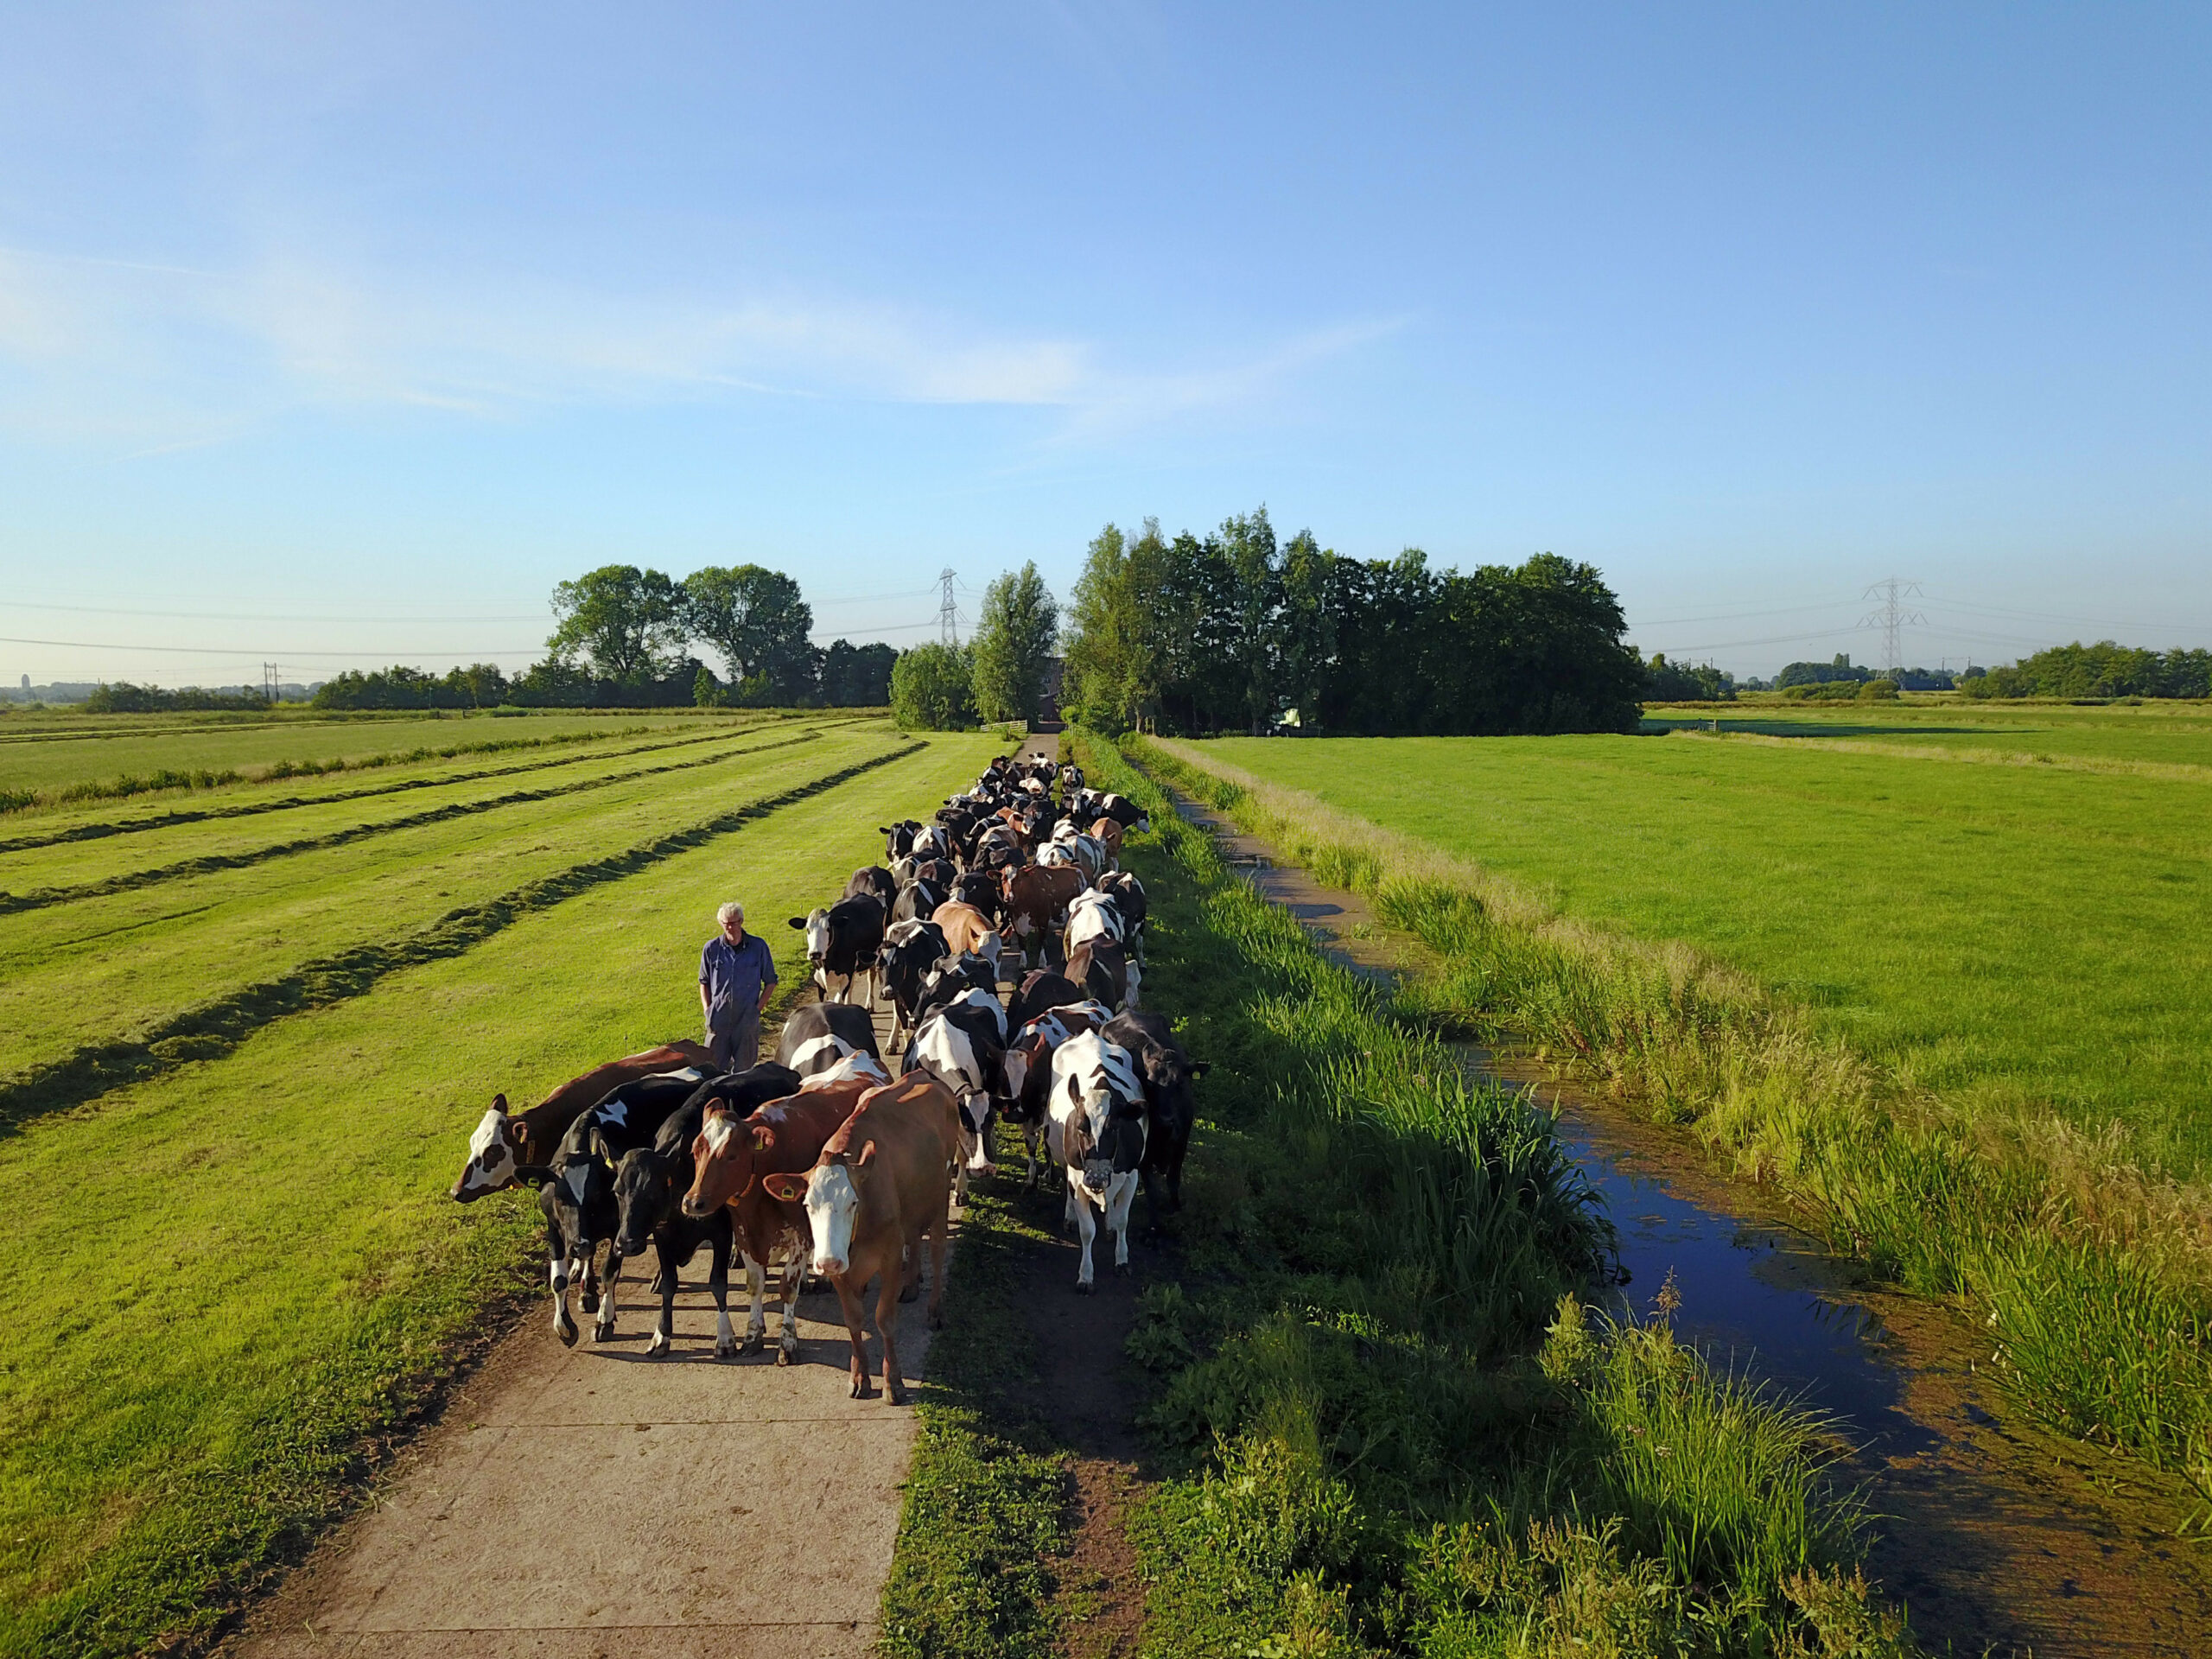 De koeien van Jan Graveland komen naar huis. Met zelf gras meten en een Feedwedge voor overzicht van de voorraad krijgt hij  grip op gras .